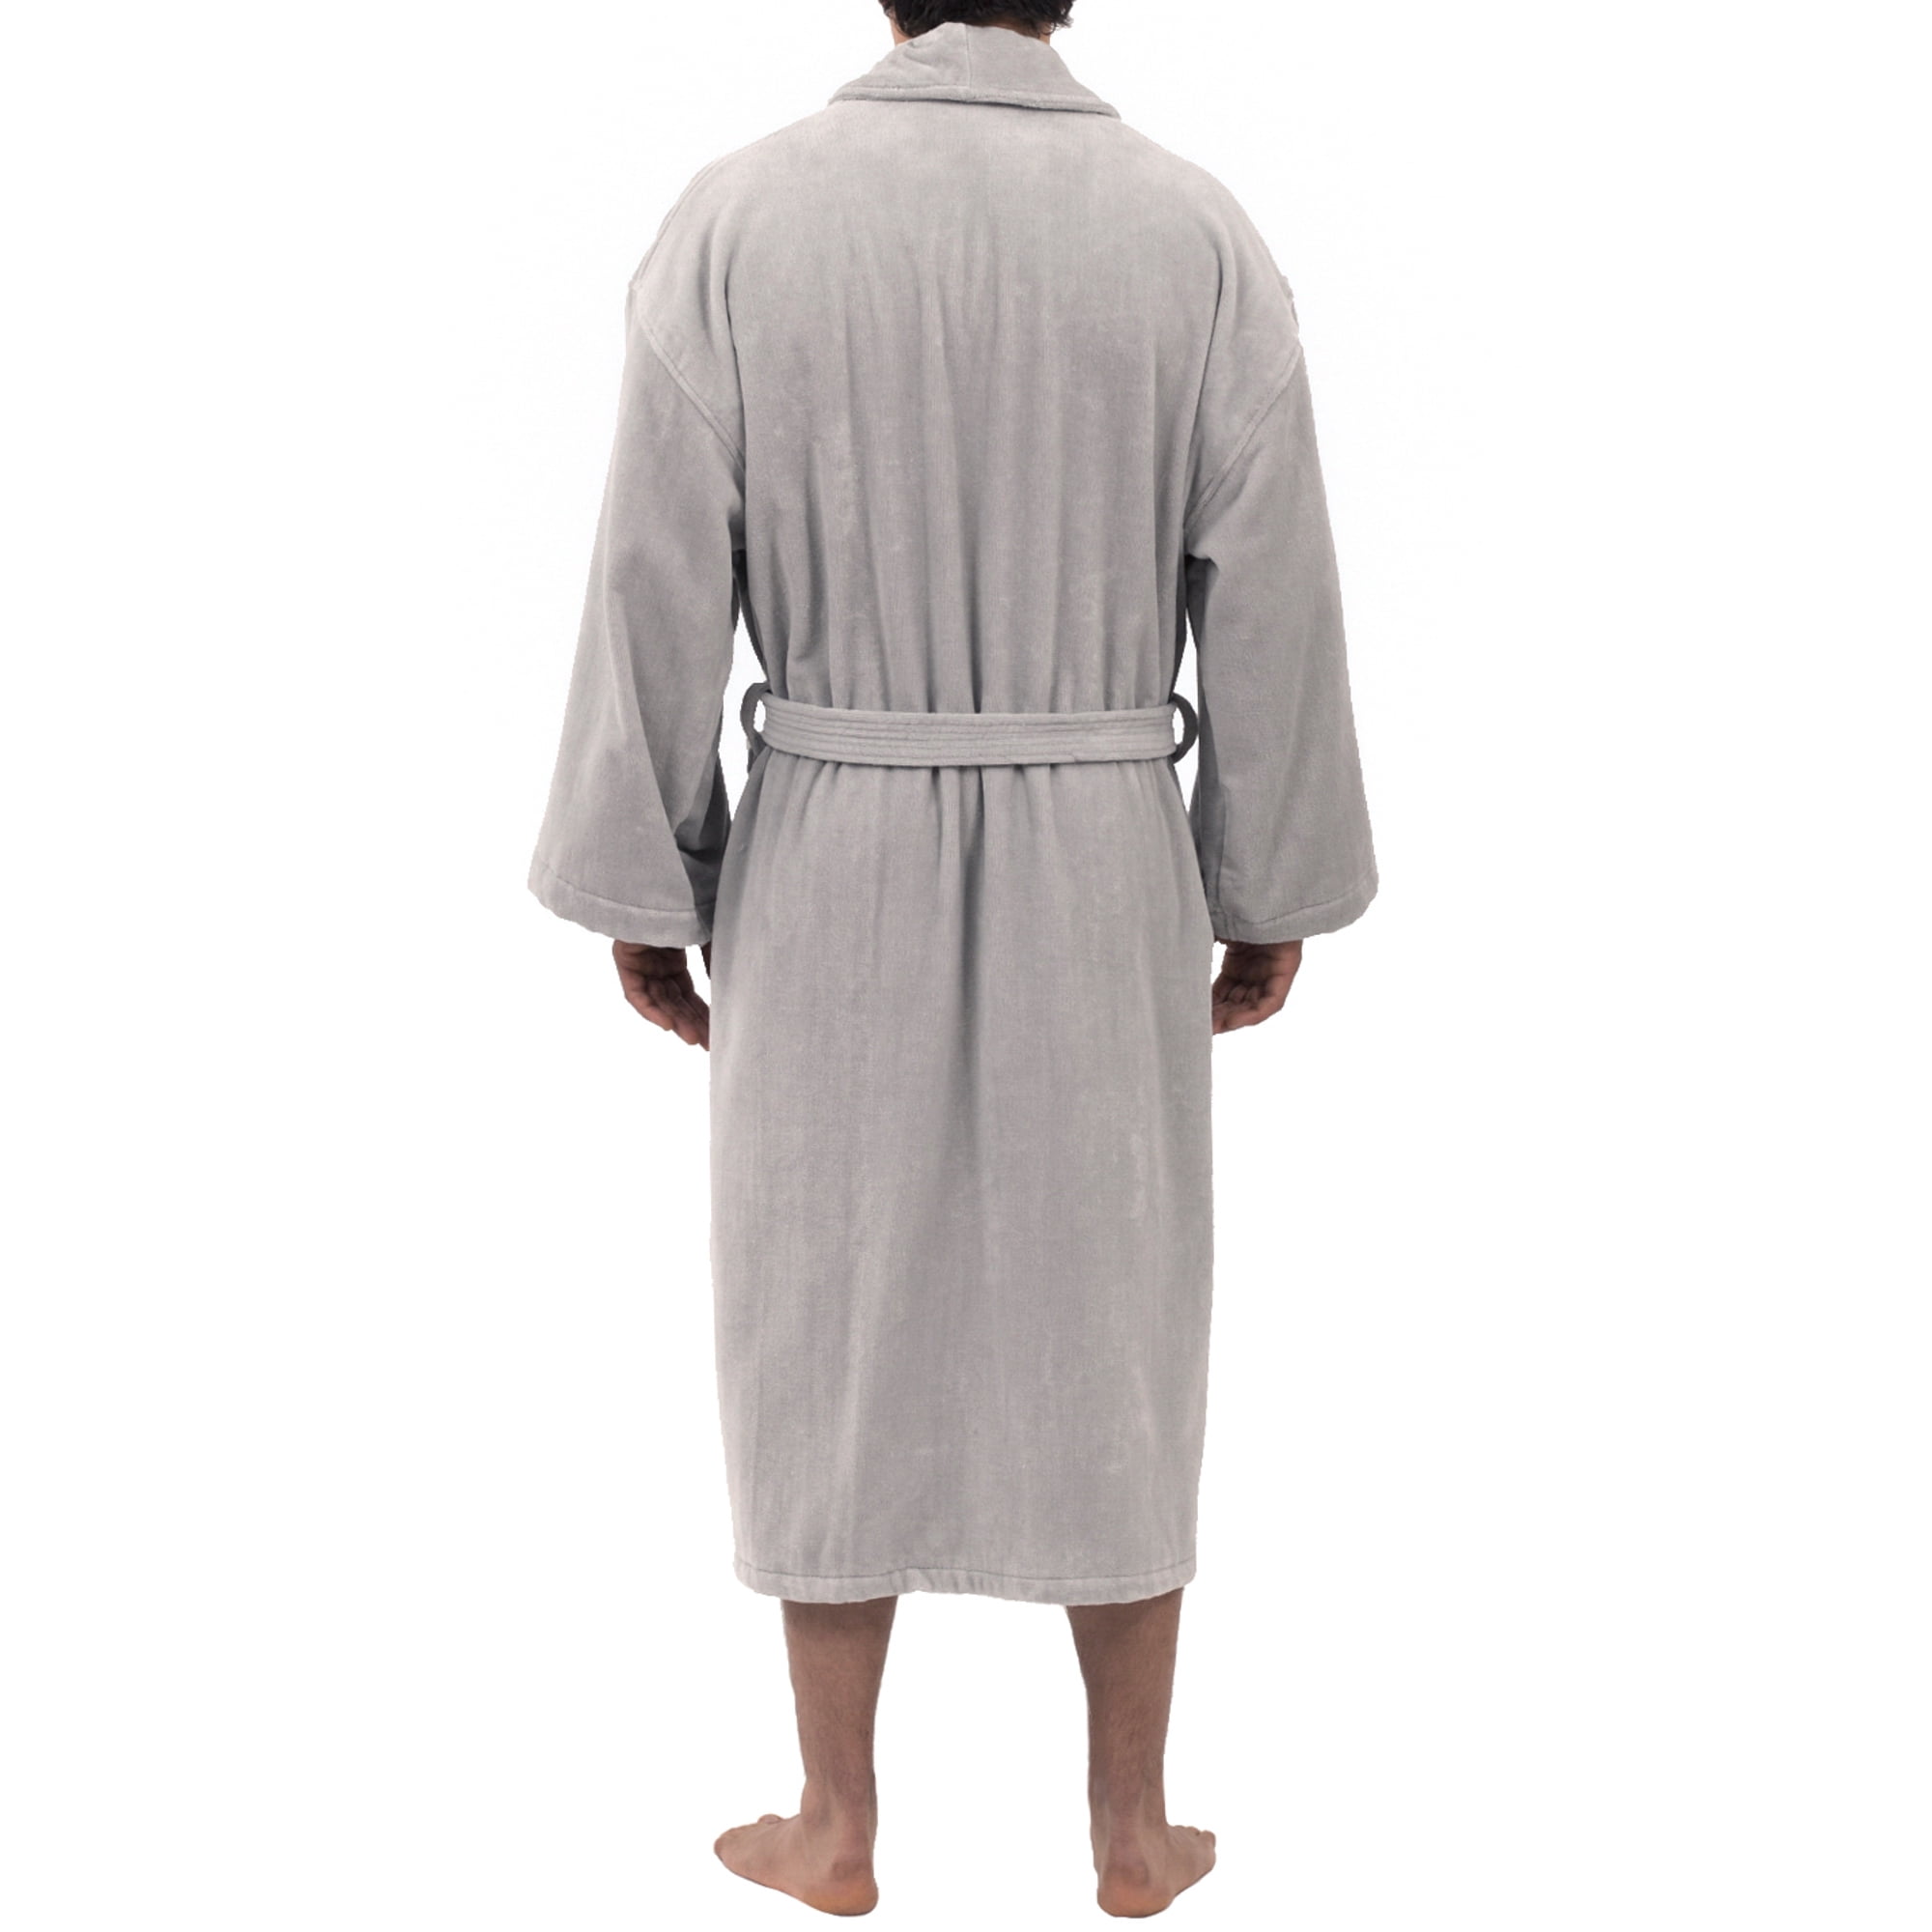 terry cloth bathrobe plus size